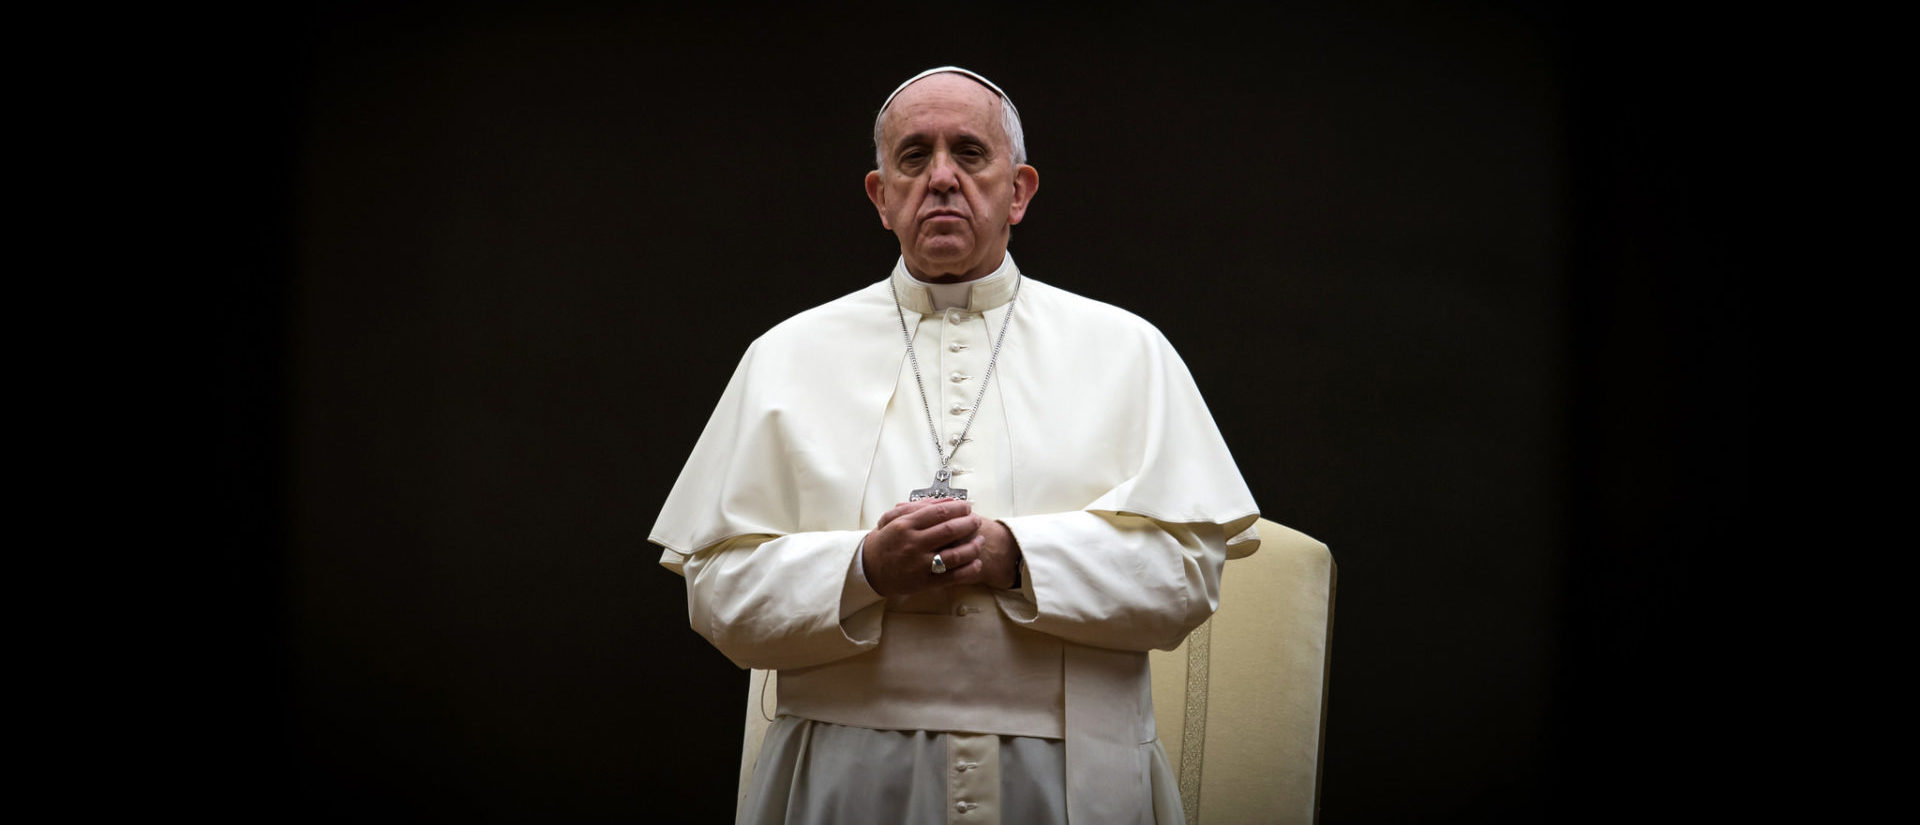 Les rapports entre le pape et sa communication sont "froids" et "distants" | © flickr/catholicism